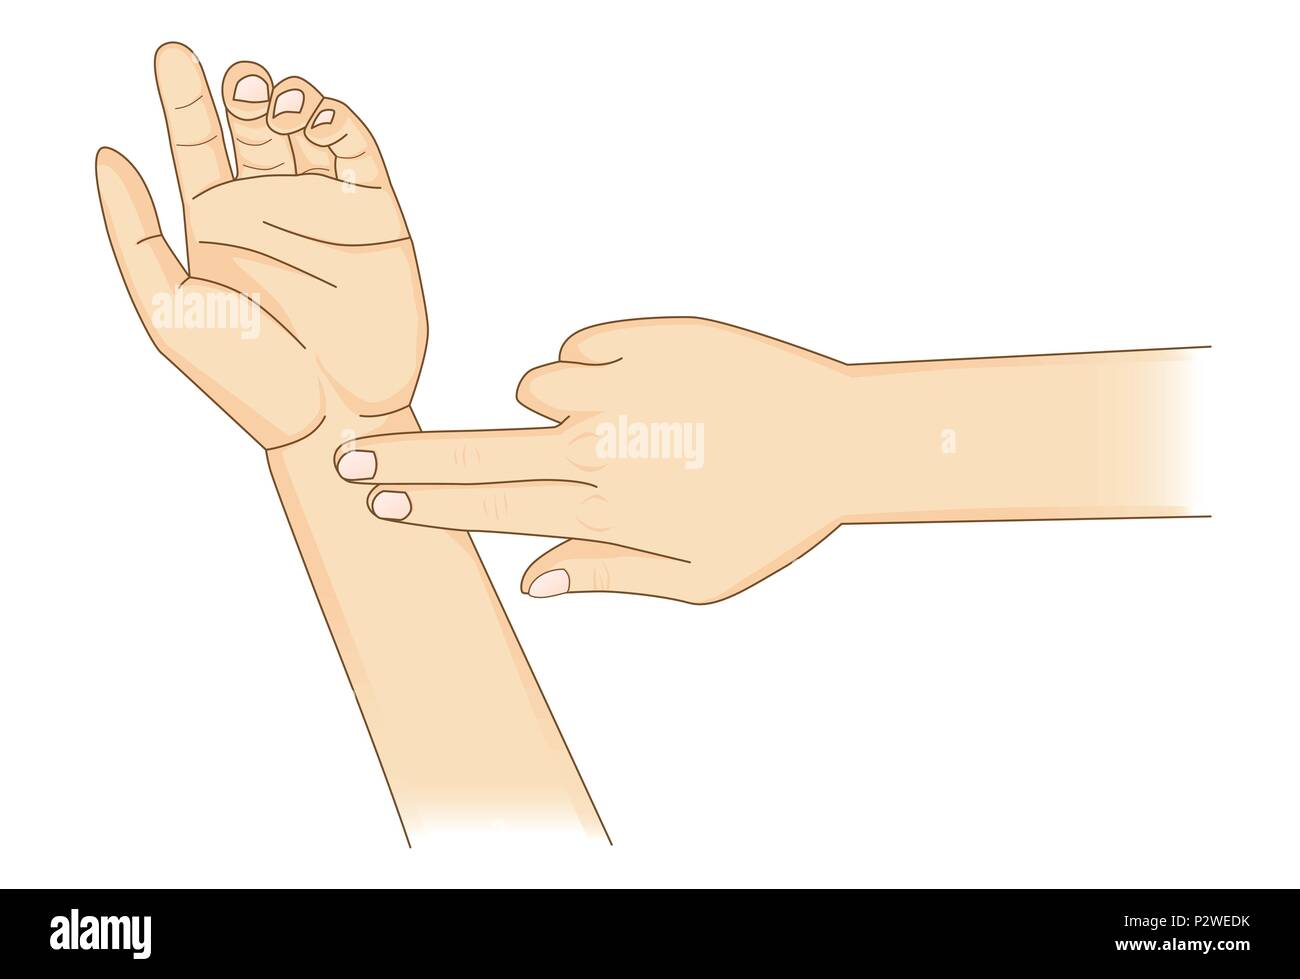 Contrôler votre fréquence cardiaque manuellement avec placez deux doigts au poignet. Illustration de Vecteur